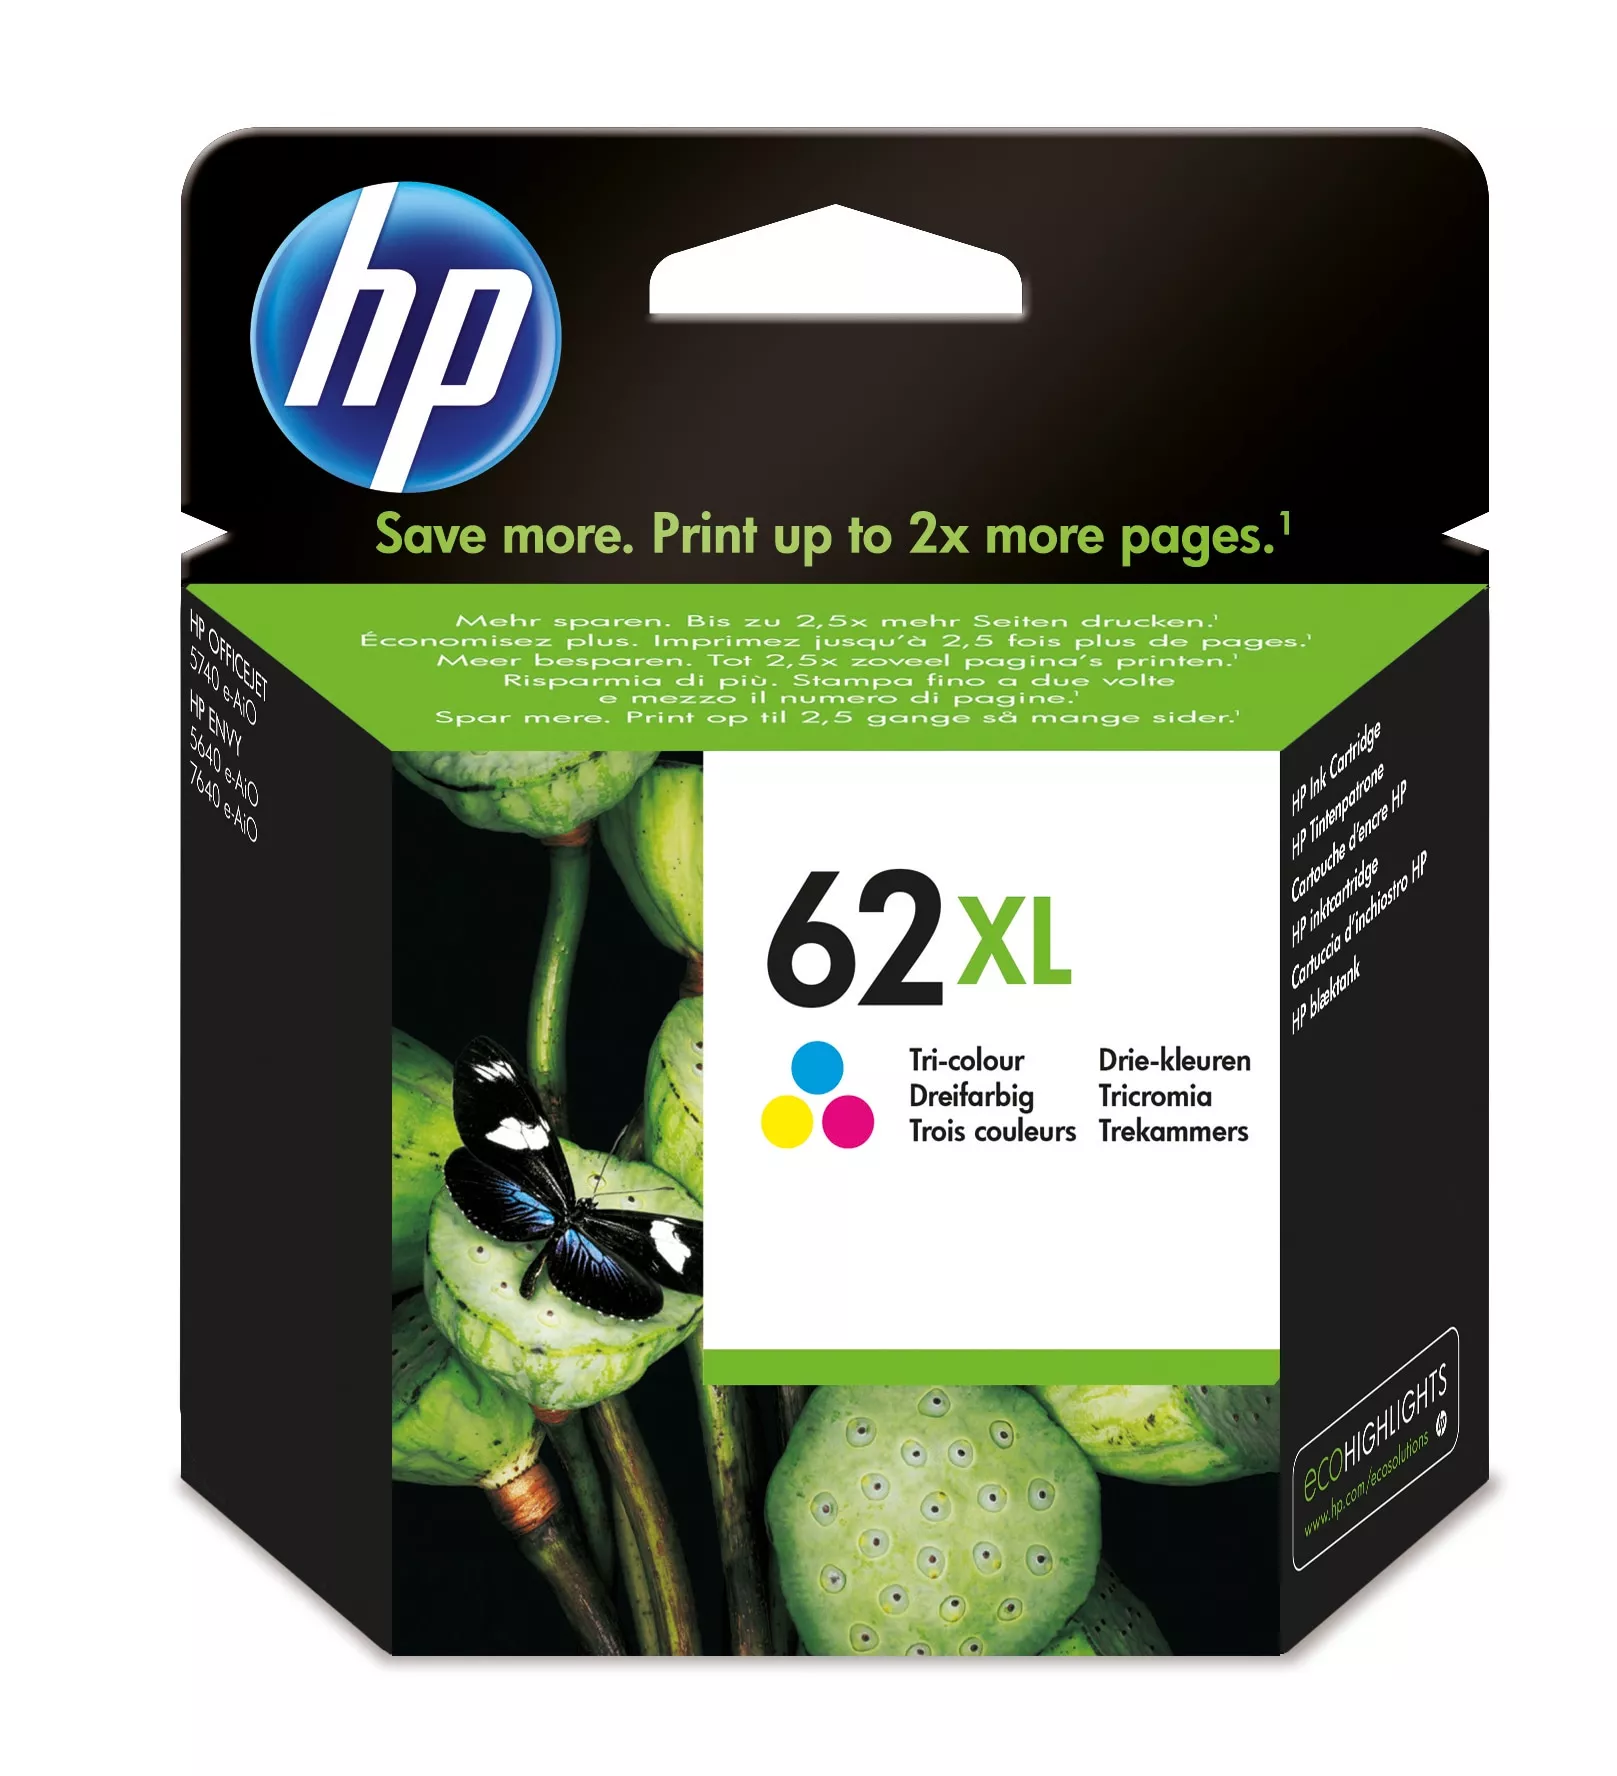 Achat HP 62XL original Ink cartridge C2P04AE 301 tri-colour high au meilleur prix